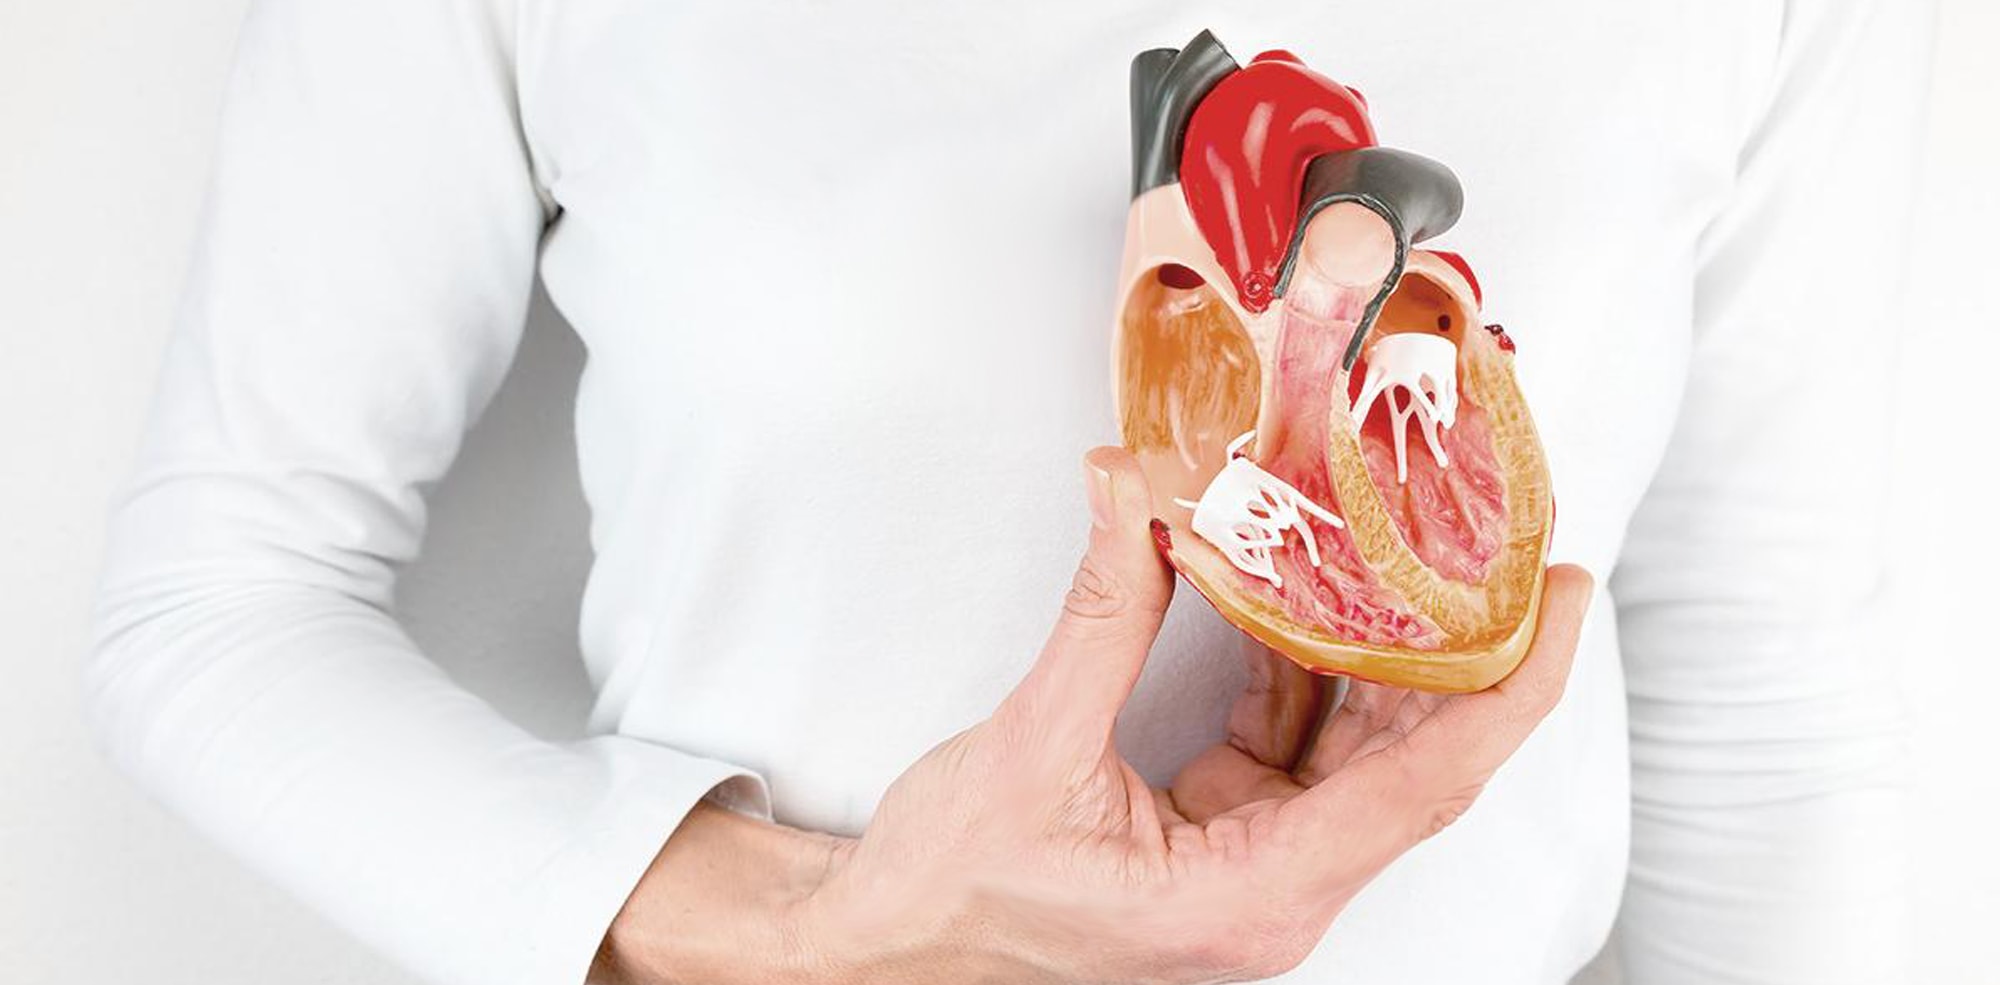 Η αιματική ροή οδηγεί στην ωρίμανση των καρδιακών βαλβίδων